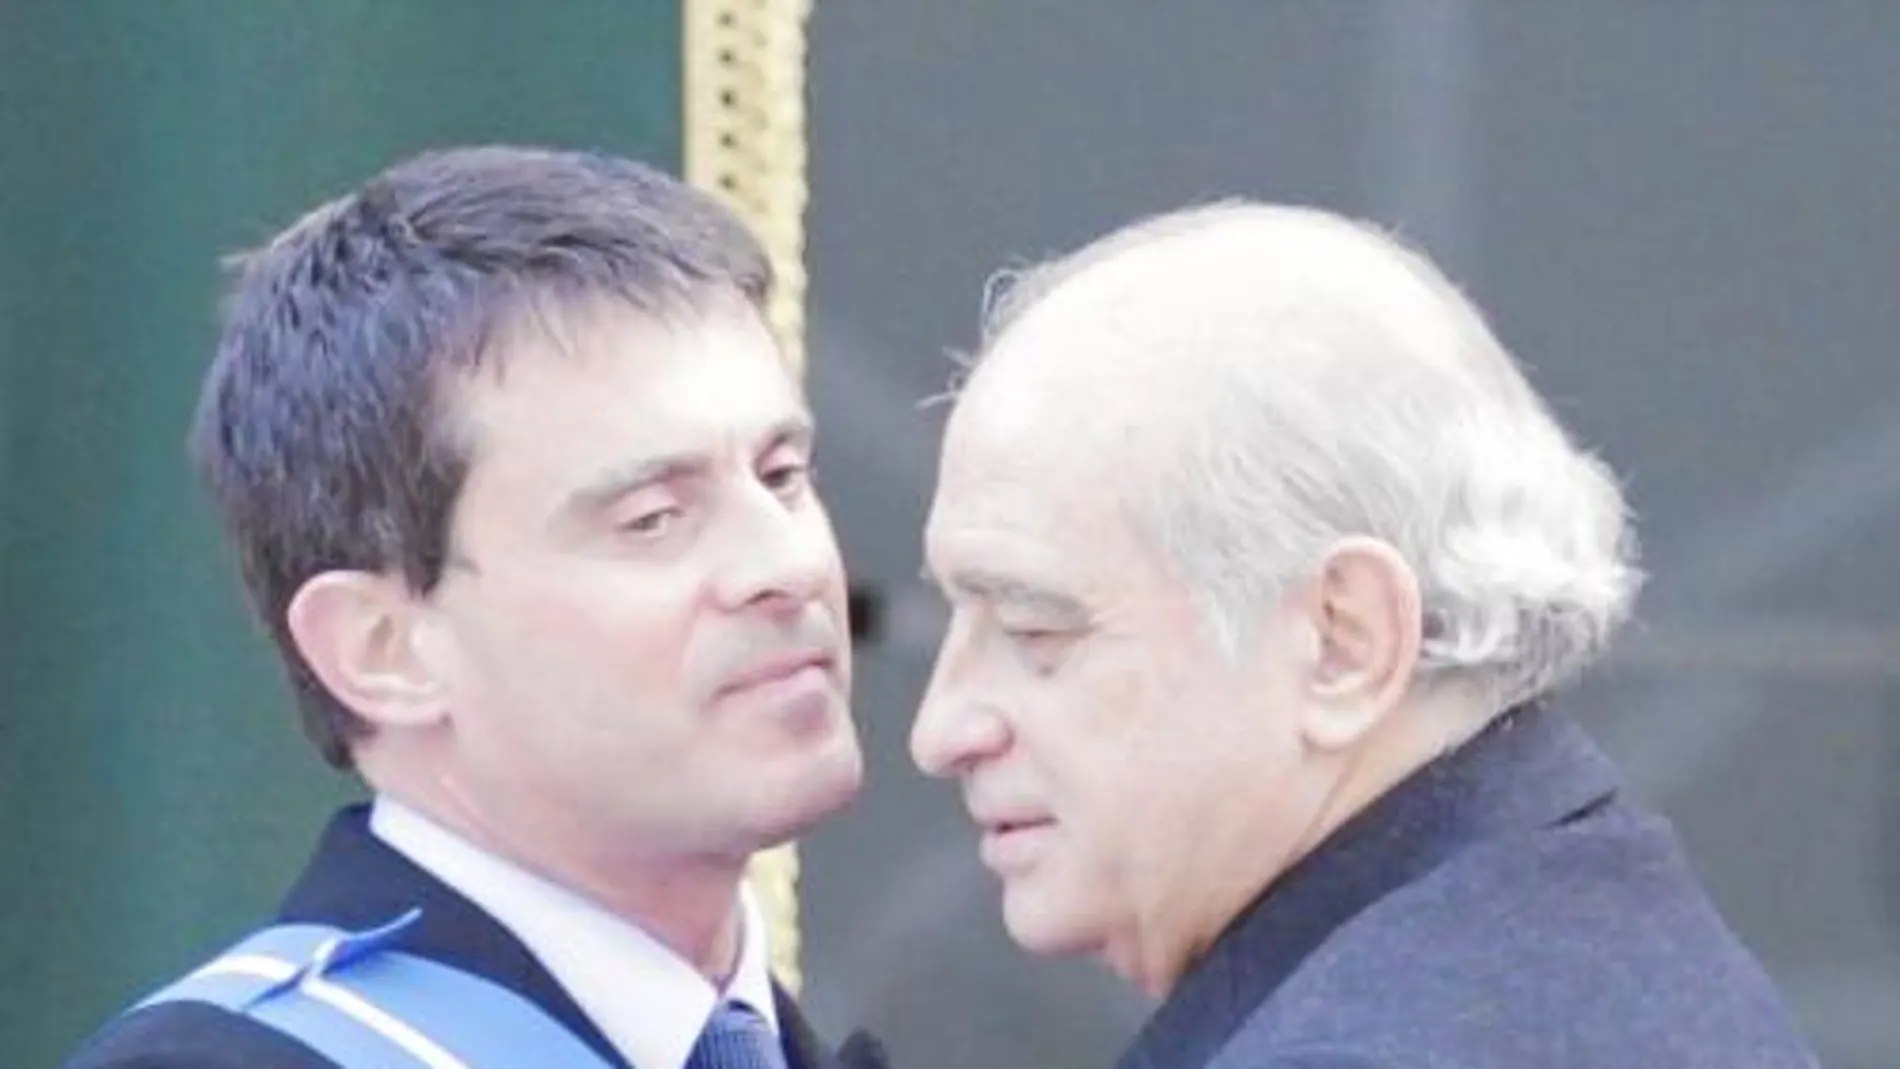 Valls y Fernández Díaz durante el acto celebrado ayer en Madrid